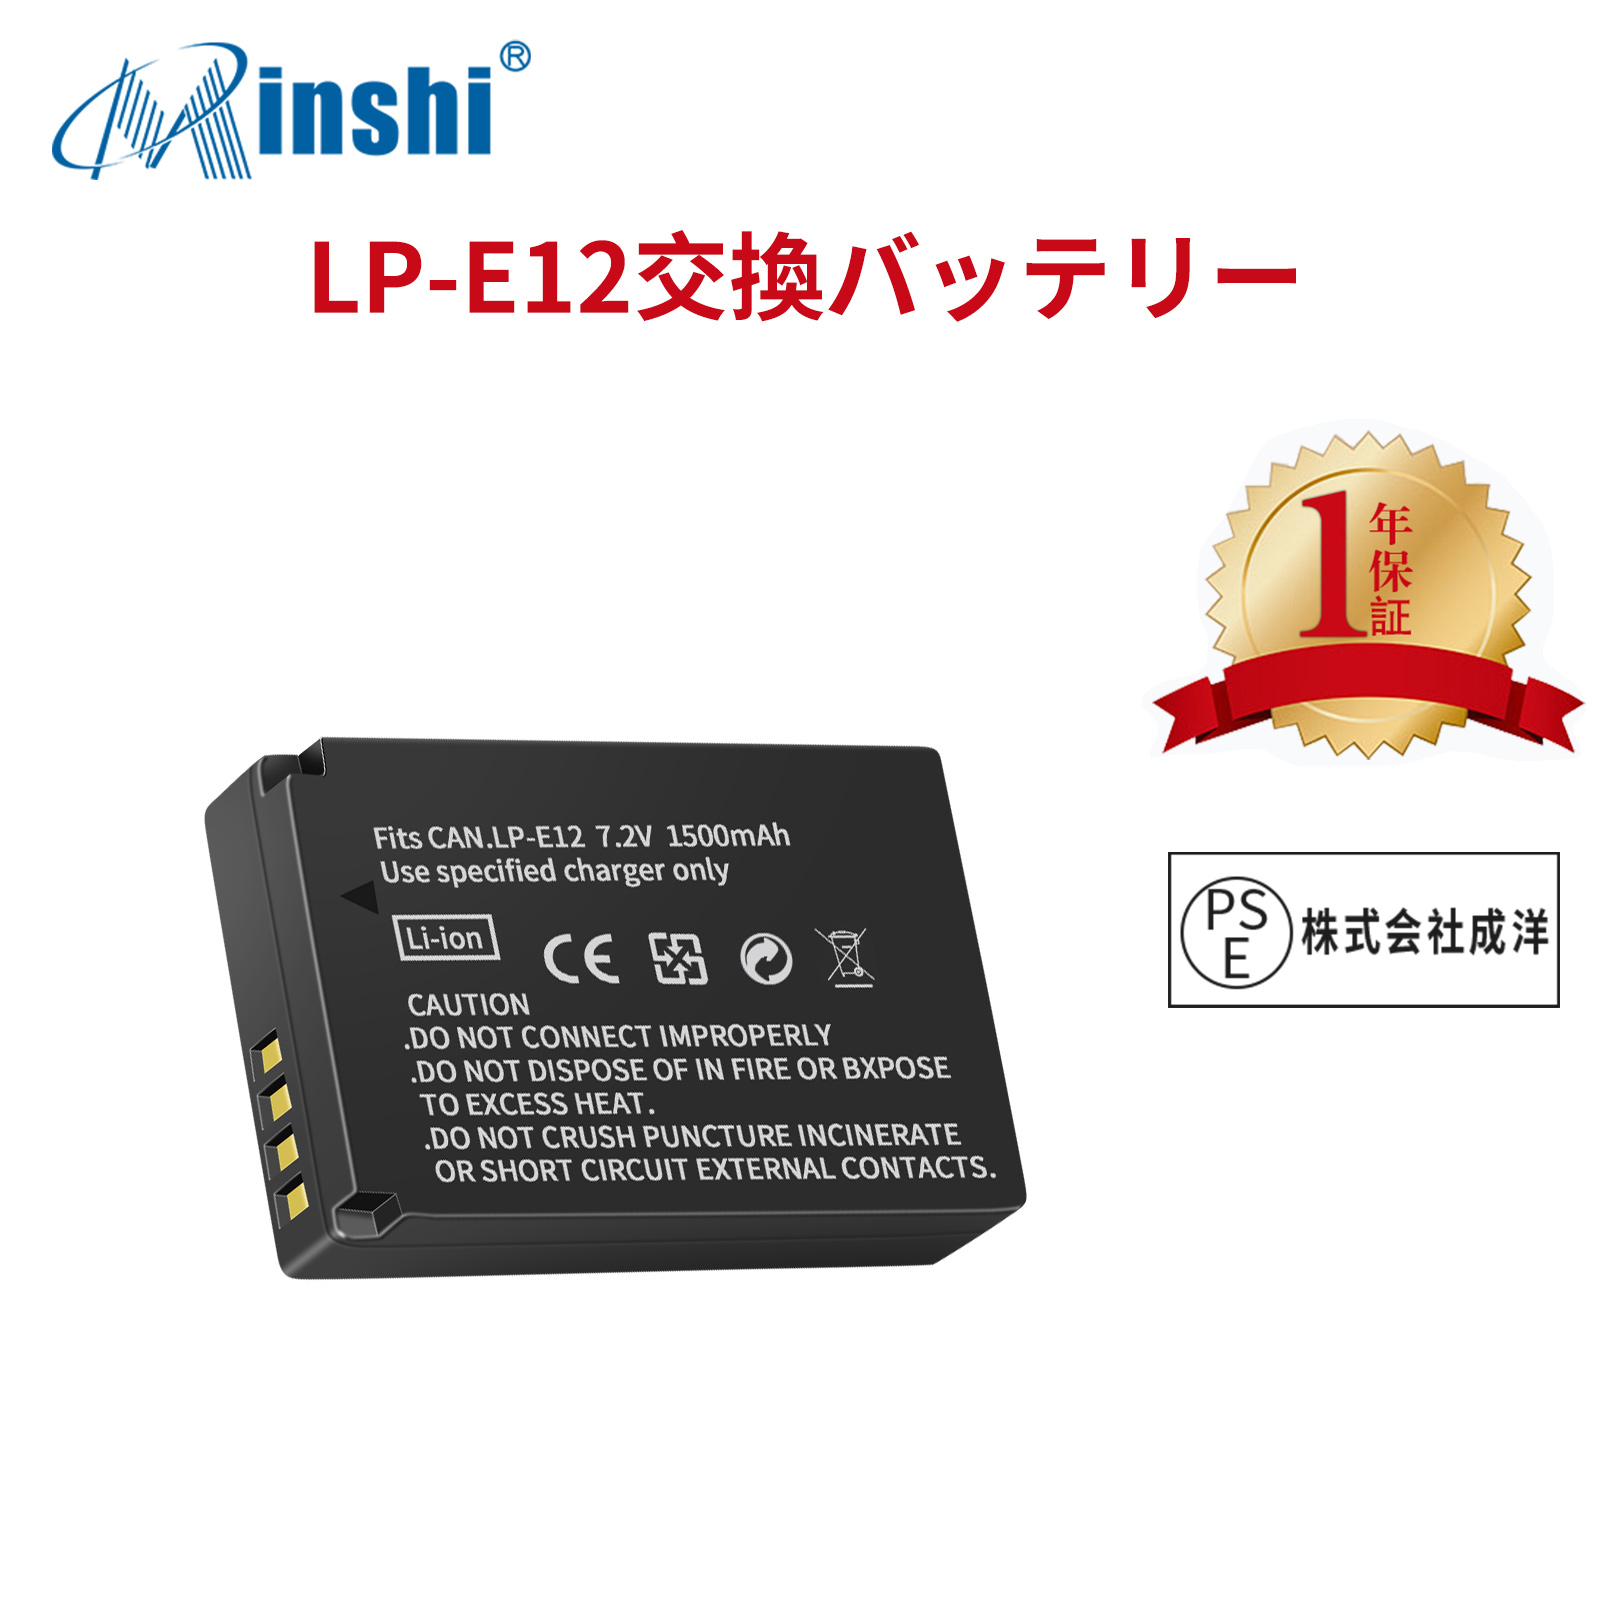 【1年保証】 minshi  EOS M、EOS M2  LP-E12  LP-E12 対応 互換バッテリー EOS M M100 M200 Kiss M X7 1500mAh  高品質交換用バッテリー